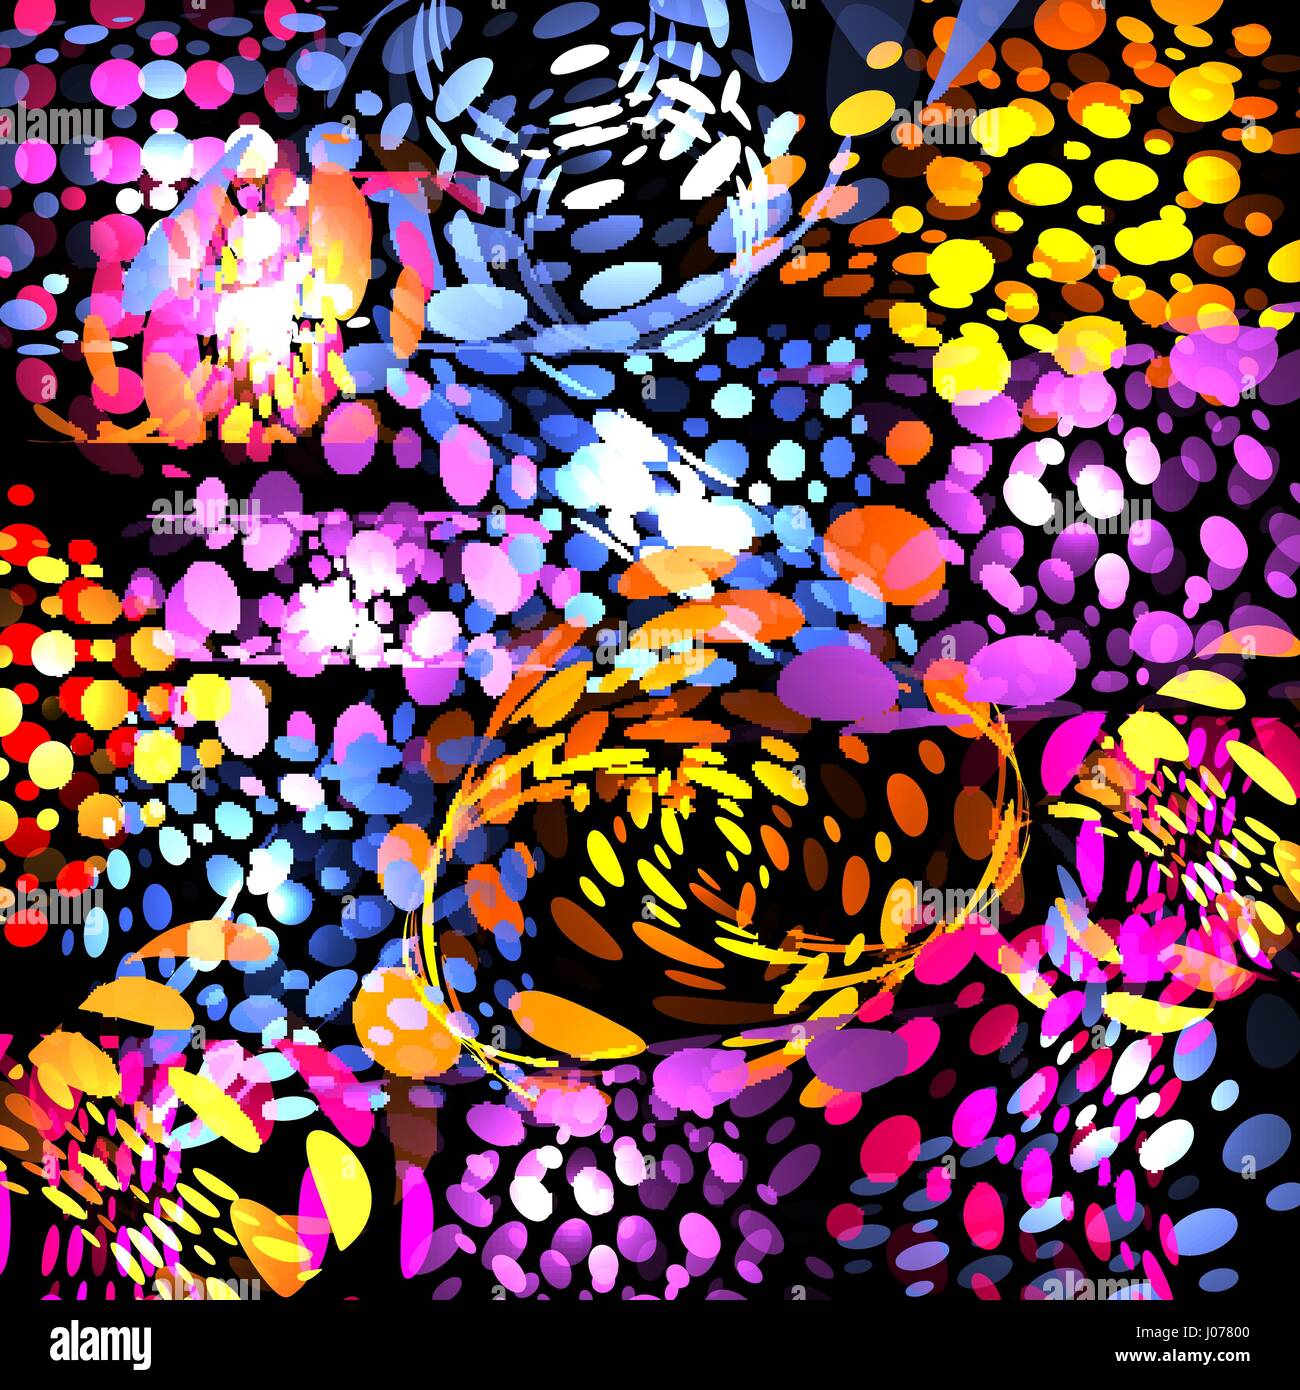 Isolierte abstrakte bunte Bläschen auf schwarzem Hintergrund, Kinder Tropfen gepunktete Textur helle Tapeten-Vektor-illustration Stock Vektor